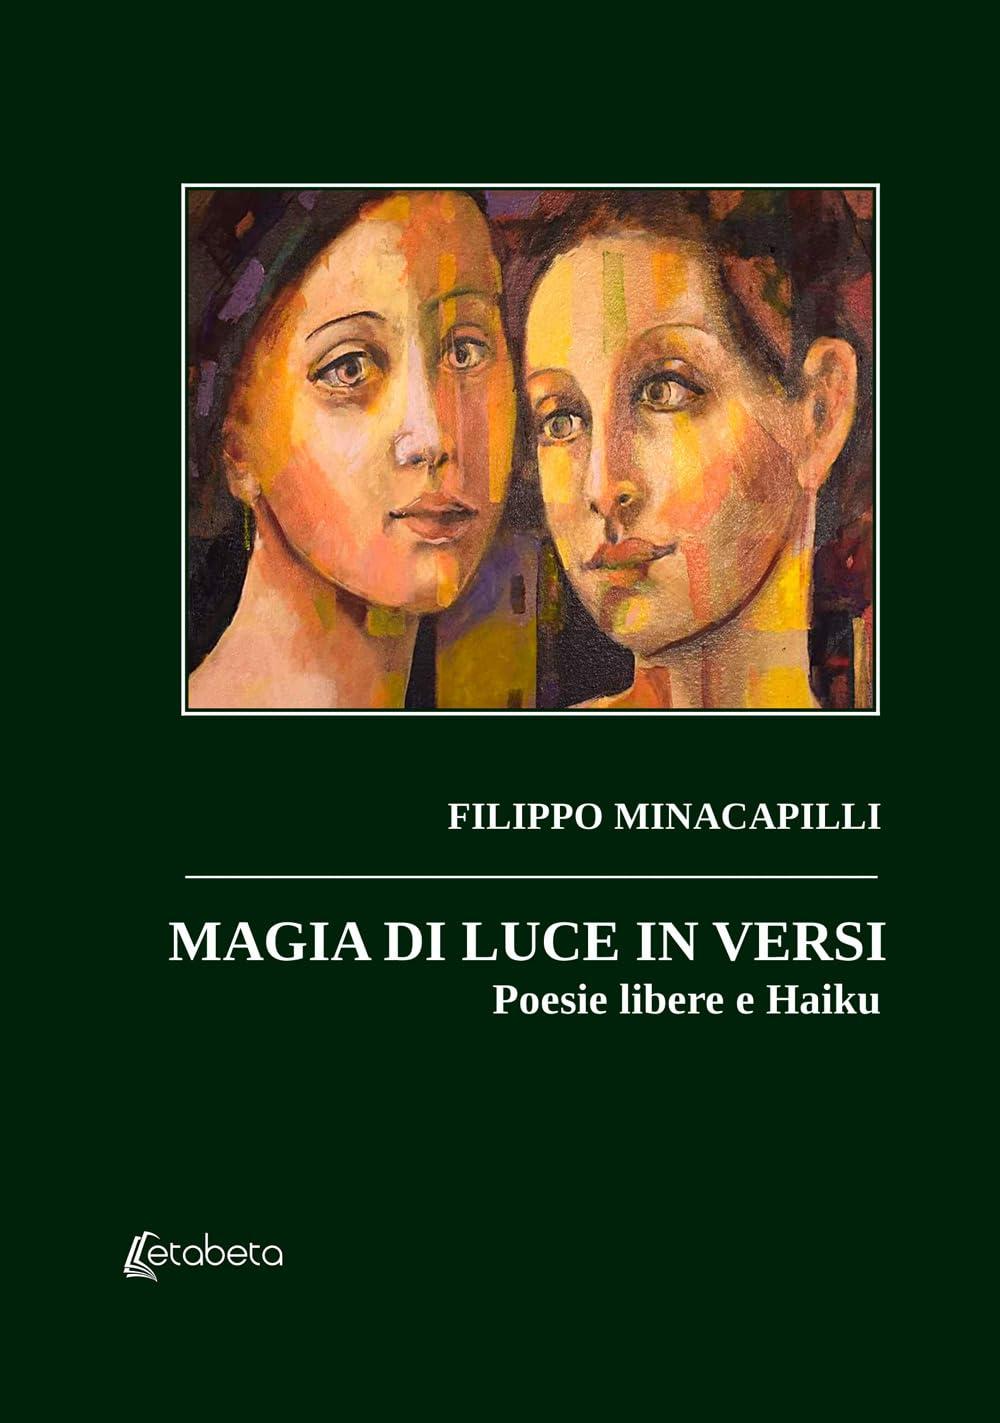 Libro "Magia di luce in versi" di Filippo Minacapilli